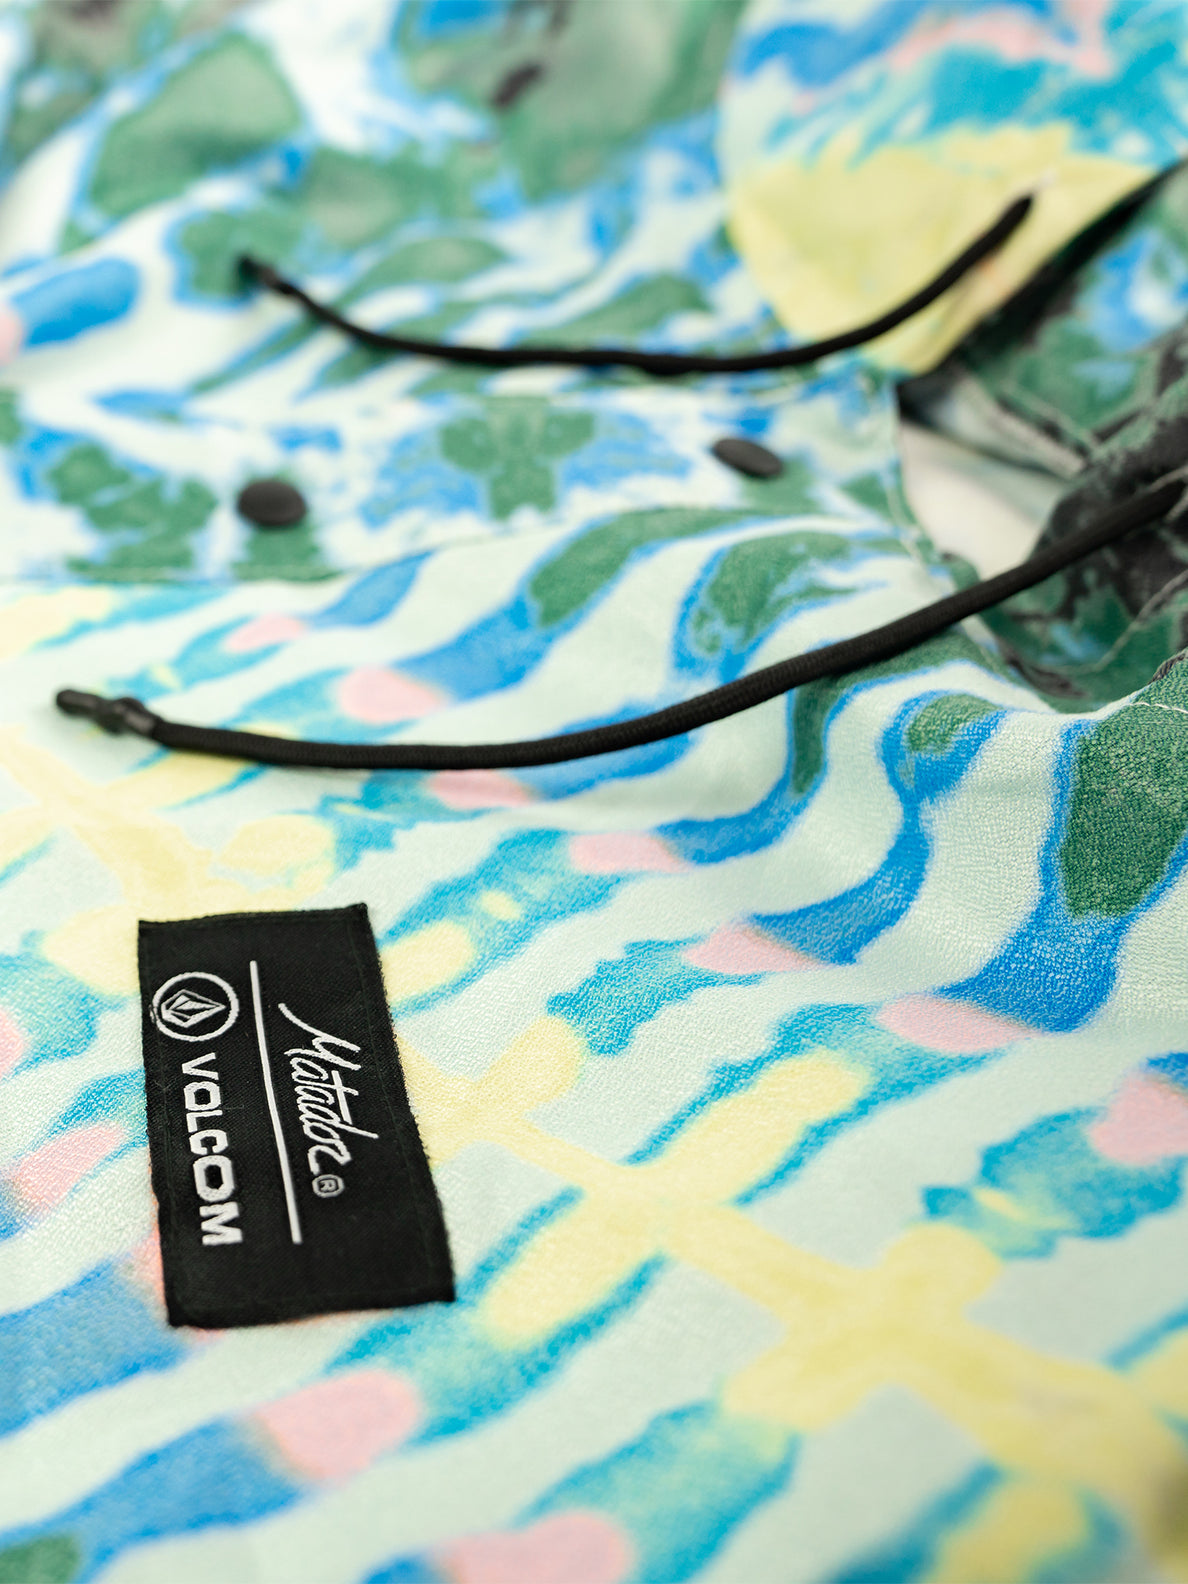 Volcom x Matador Packable Beach Poncho - Tie Dye – Volcom Canada